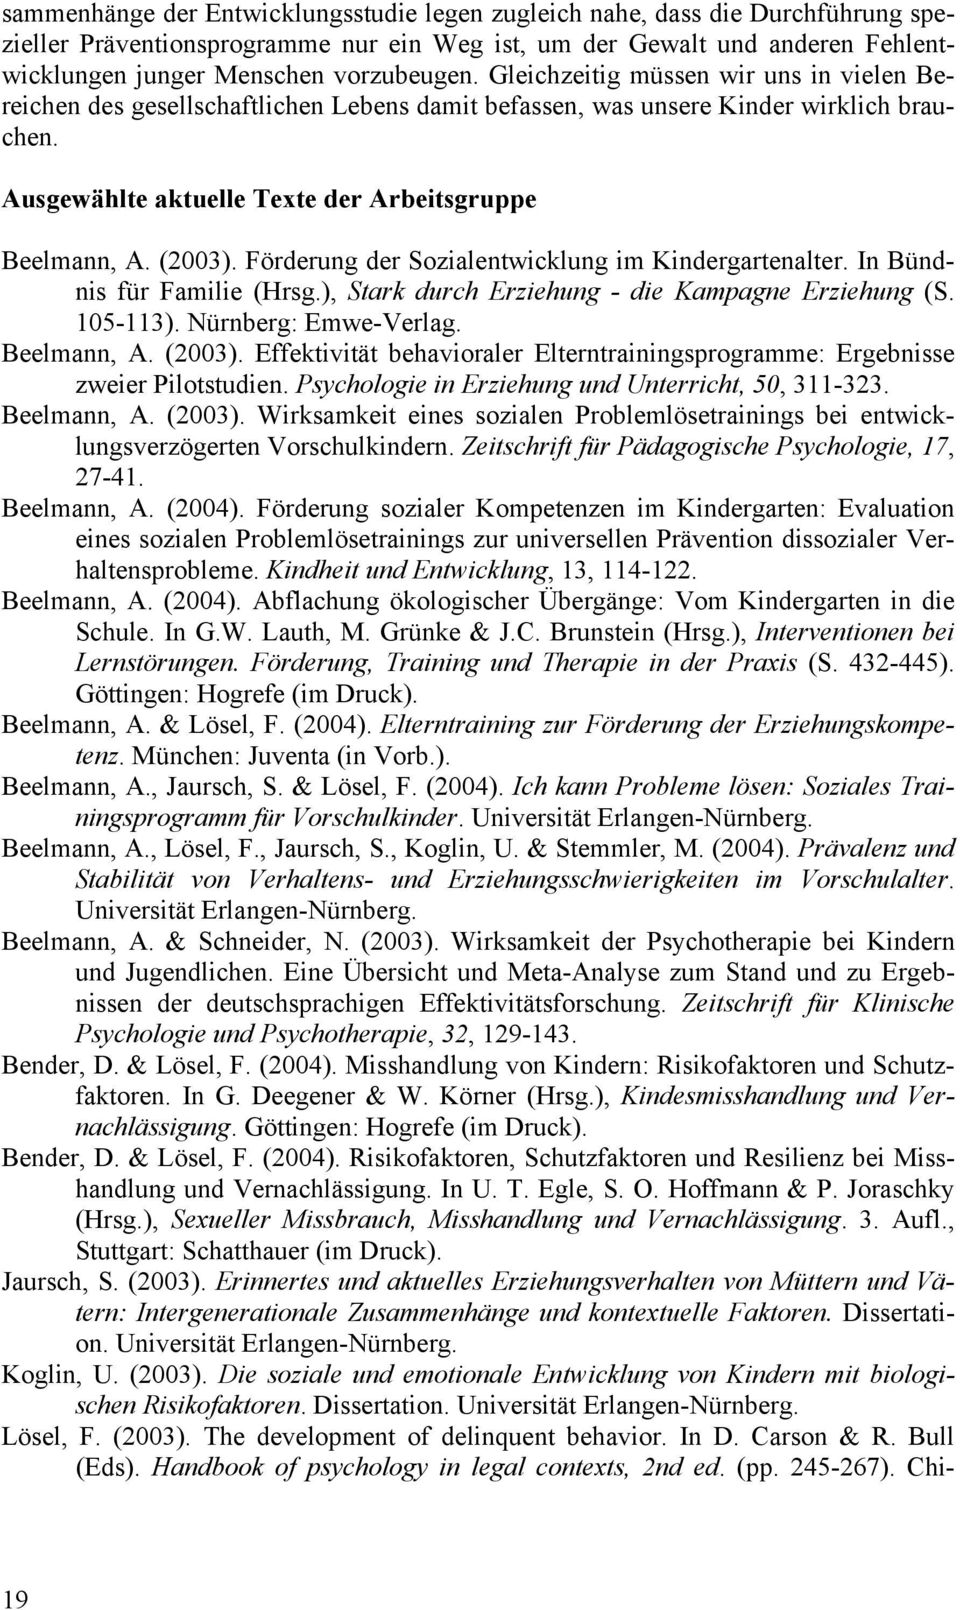 Förderung der Sozialentwicklung im Kindergartenalter. In Bündnis für Familie (Hrsg.), Stark durch Erziehung - die Kampagne Erziehung (S. 105-113). Nürnberg: Emwe-Verlag. Beelmann, A. (2003).